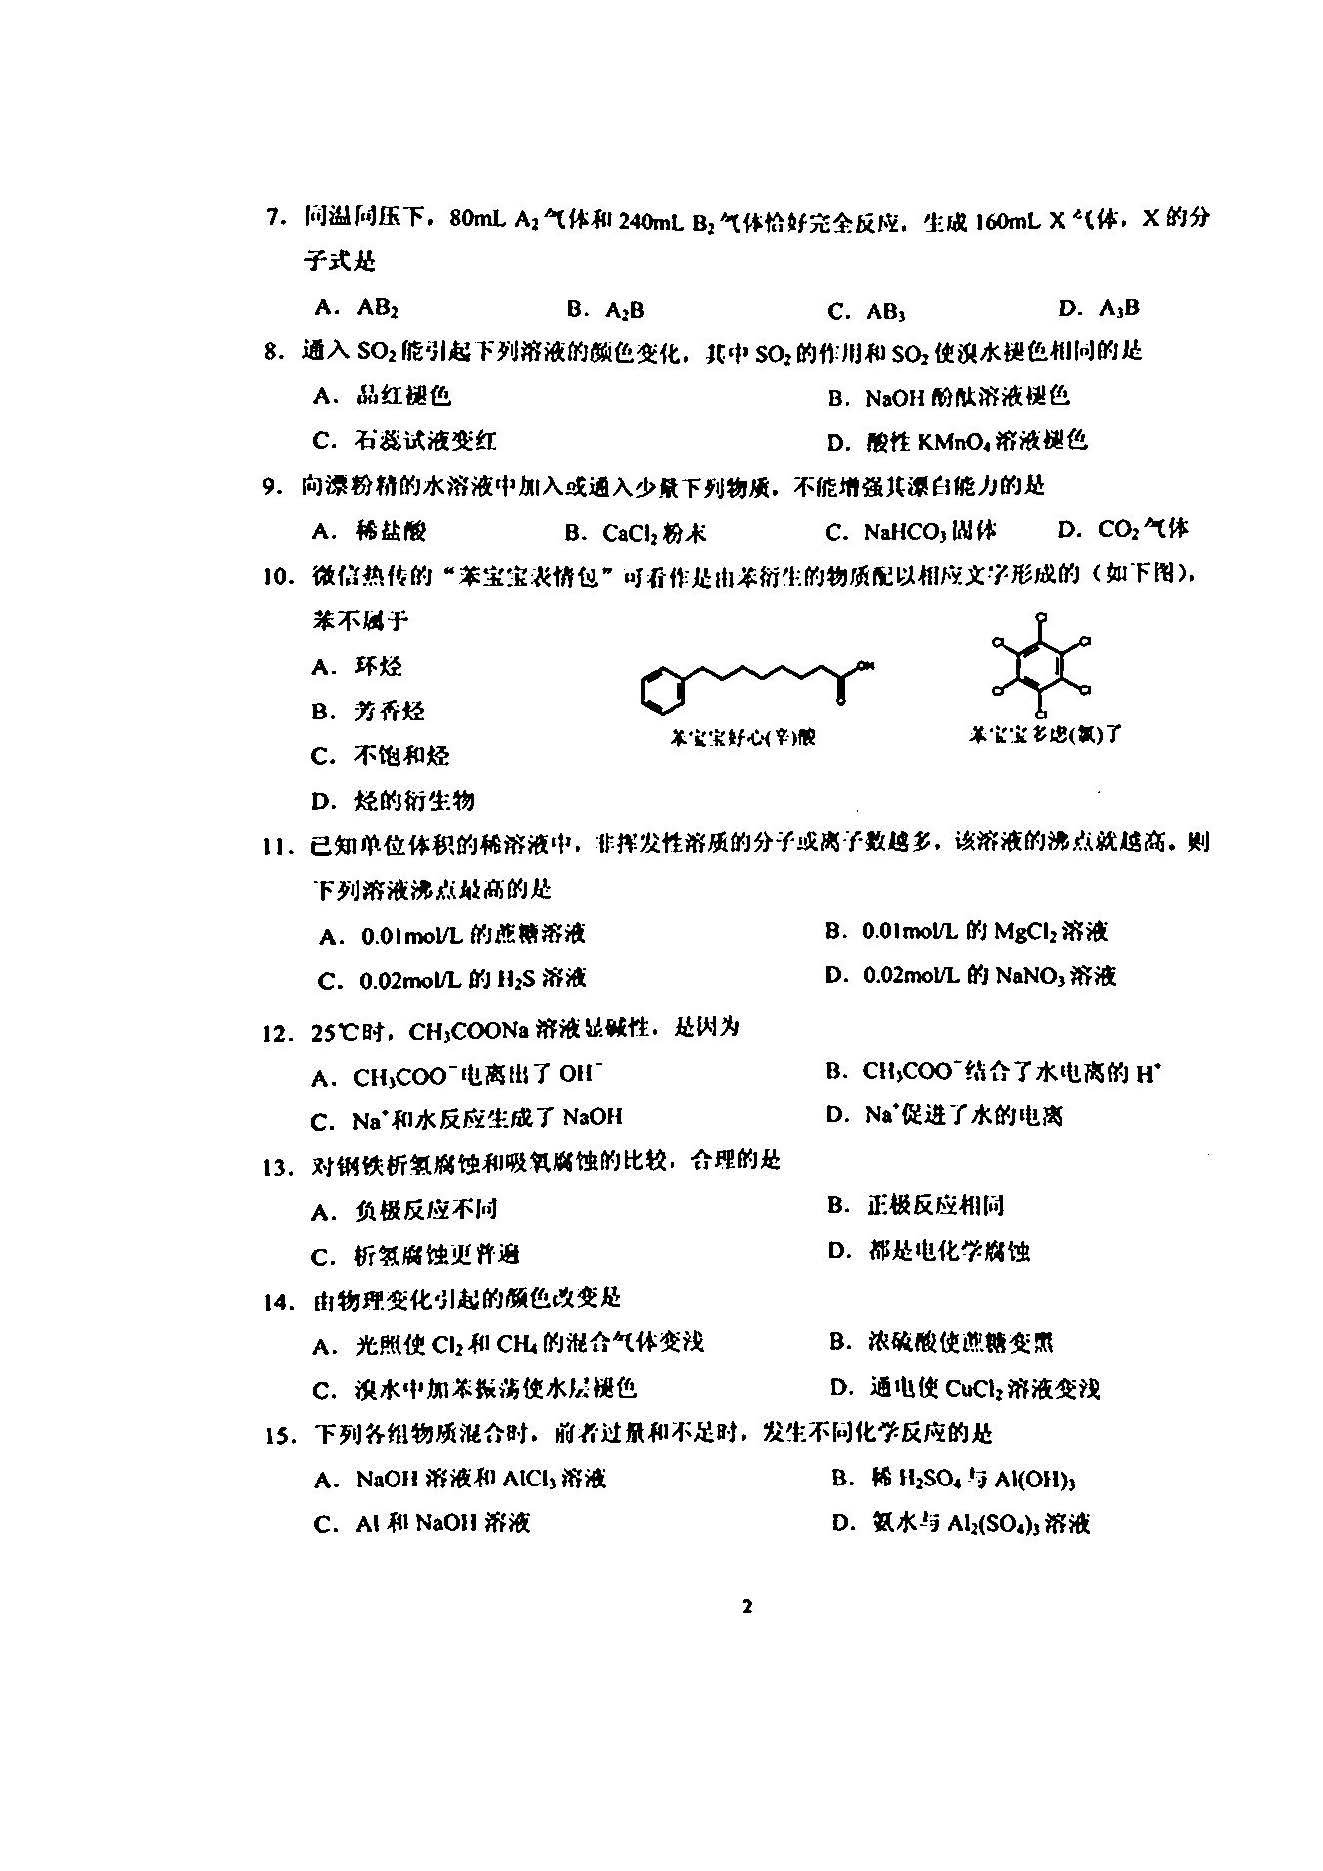 杨浦区2018学年度第一学期质量调研高三年级化学学科试卷及答案整理